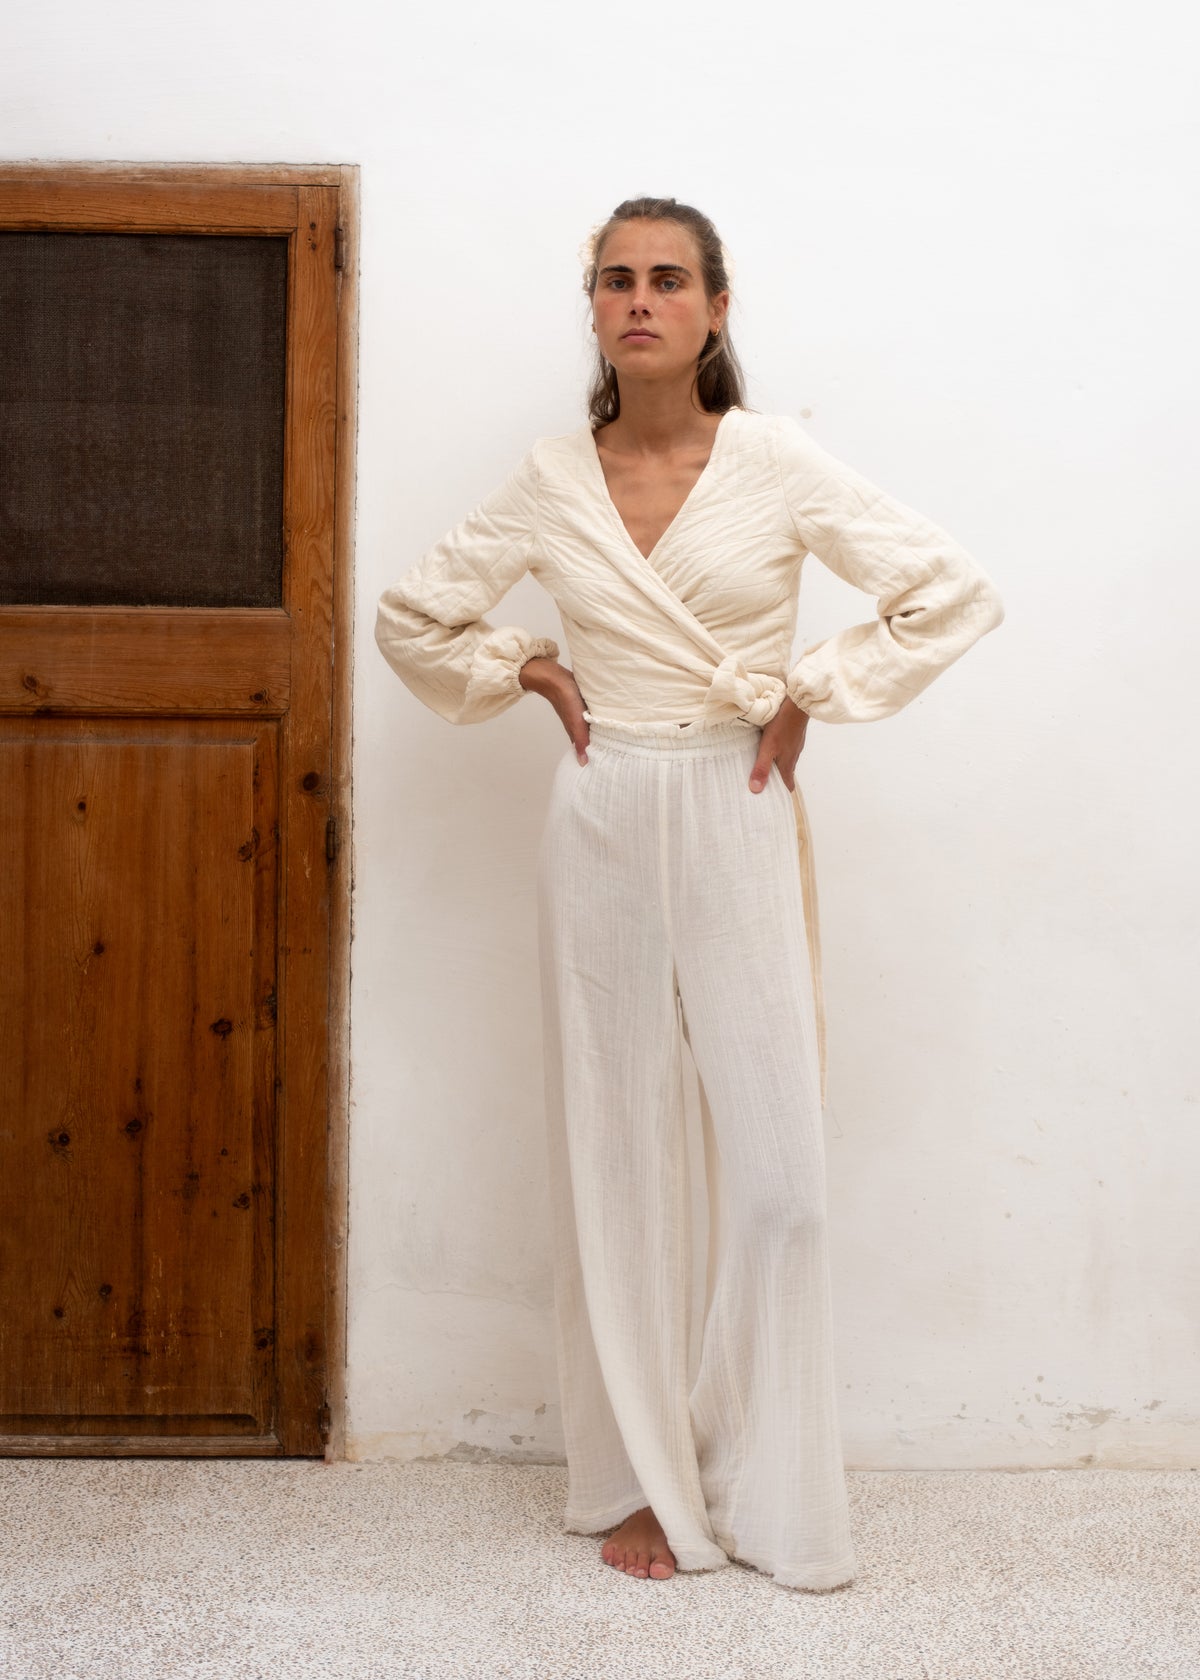 LA MAISON BUNDLE — Brown Renoir Skirt + Blouse Of Choice